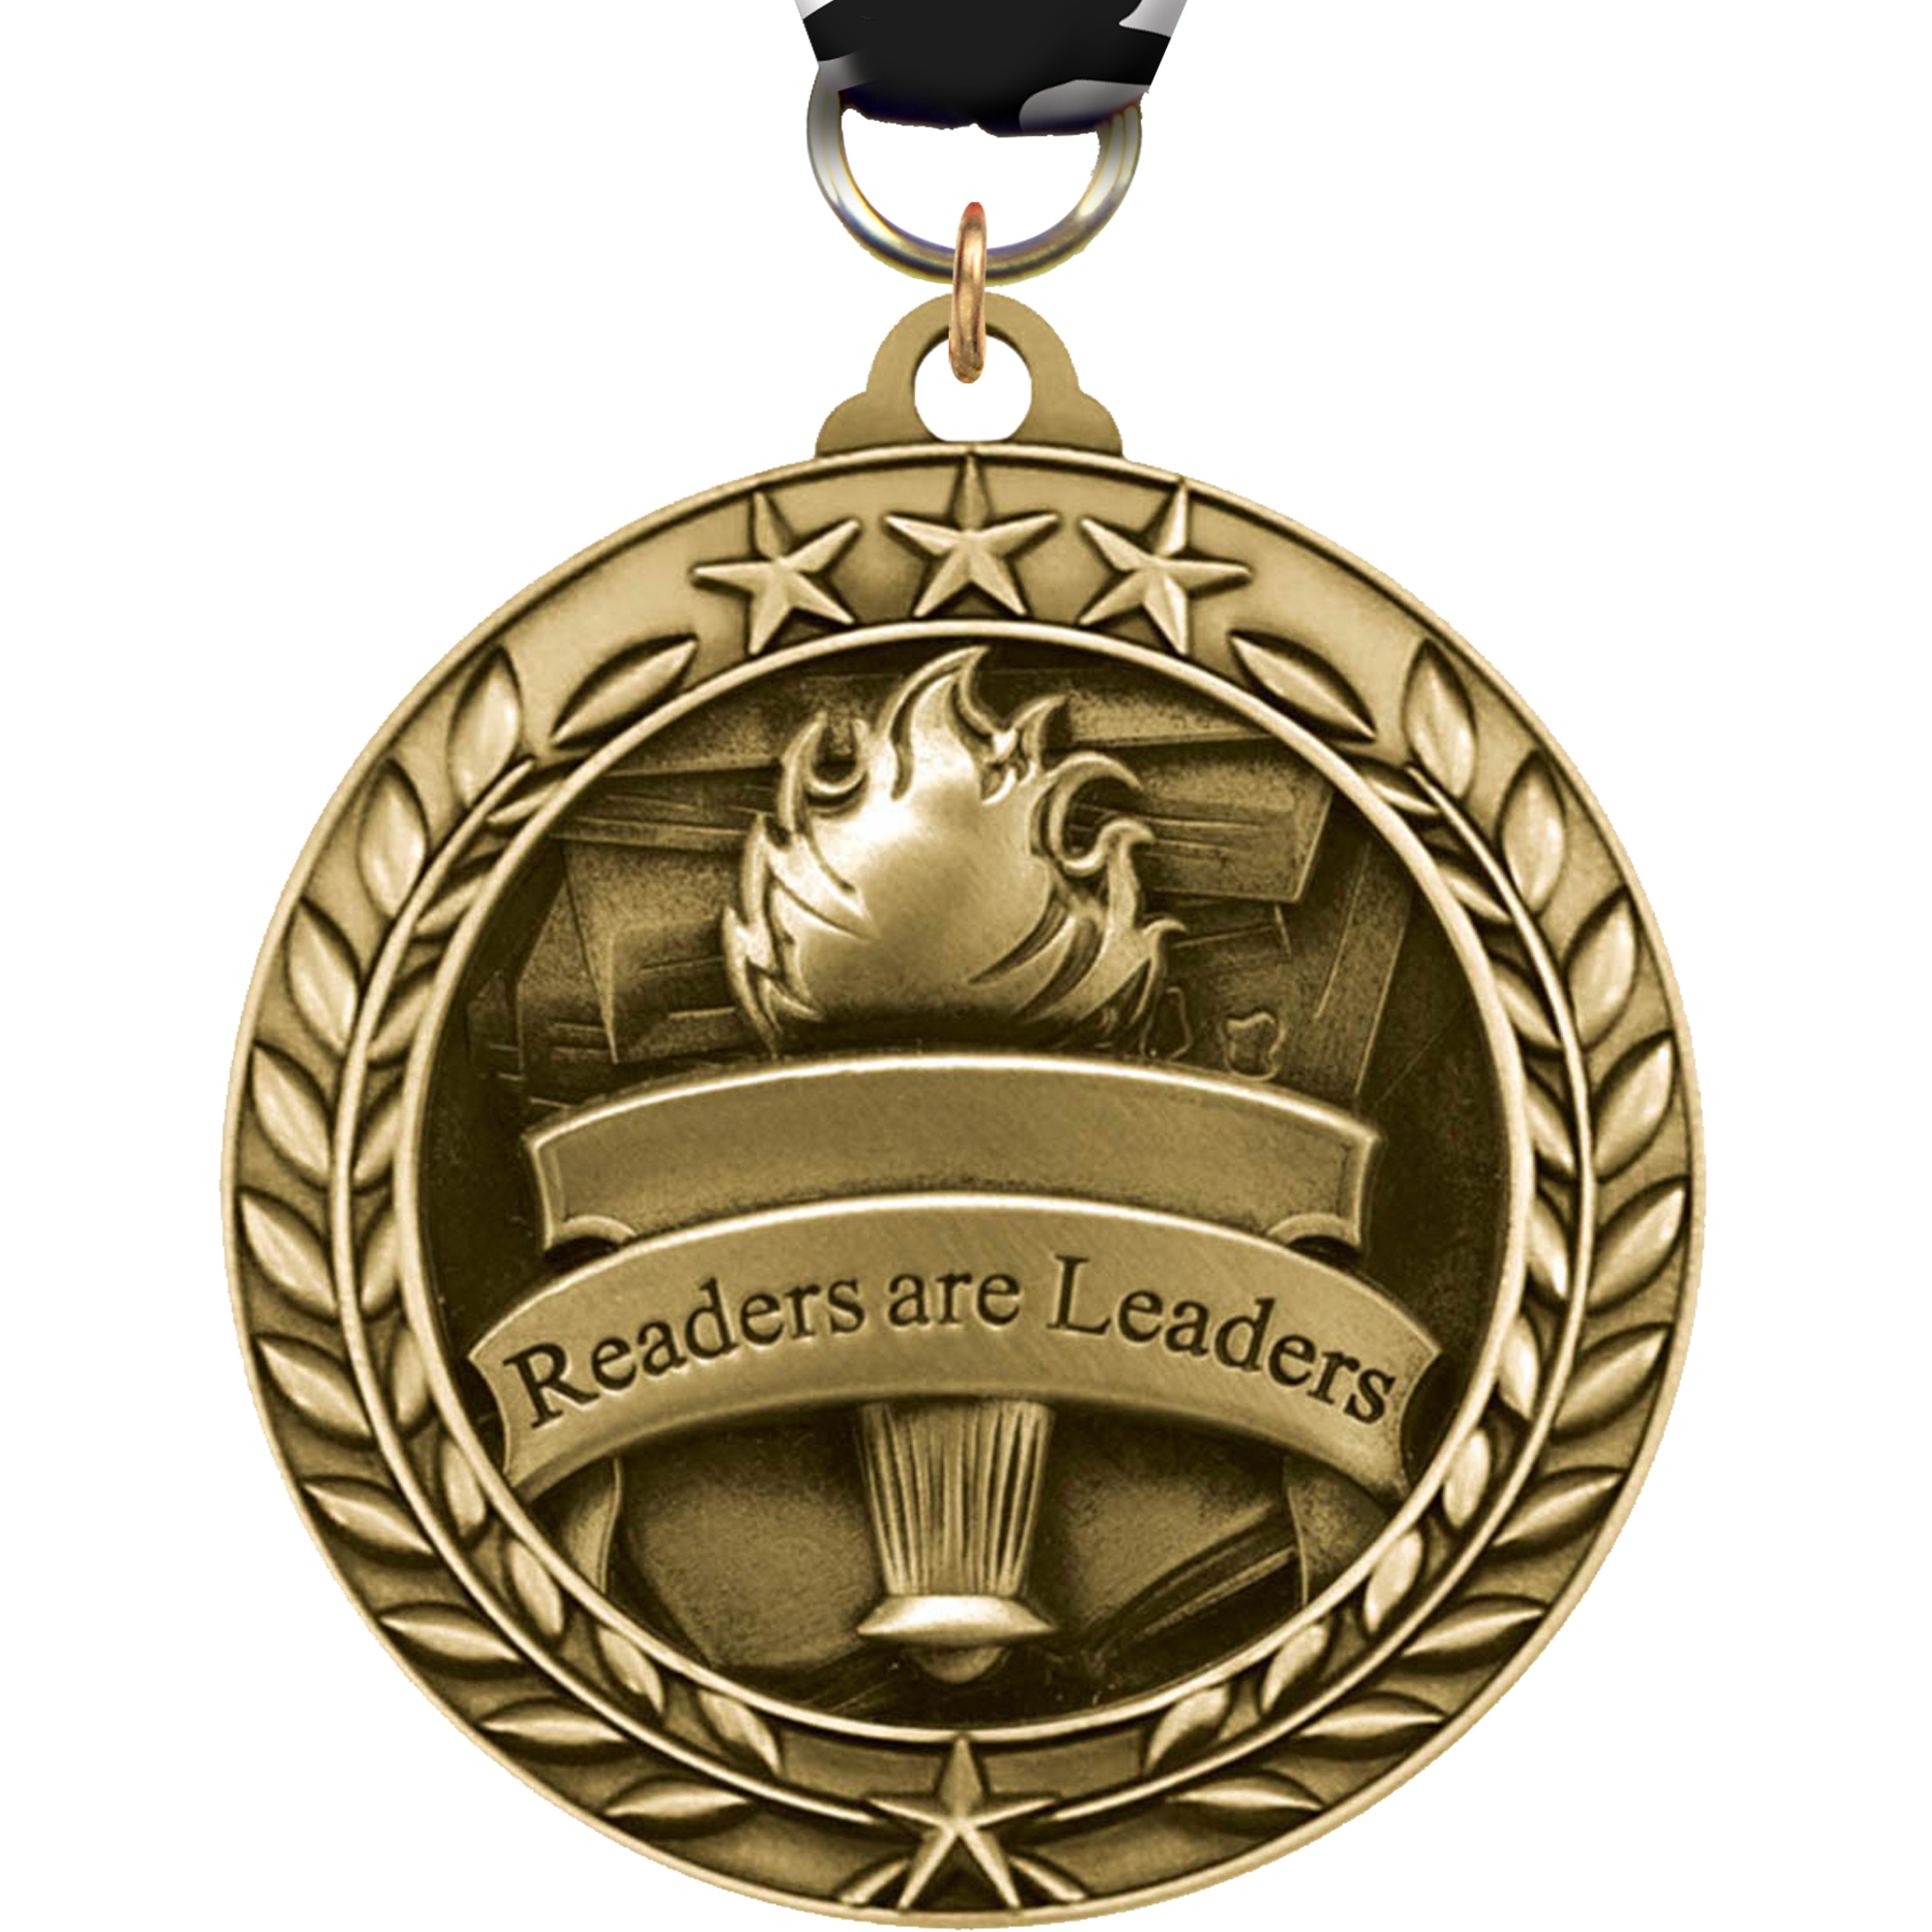 Readers are Leaders Dimensional Medal